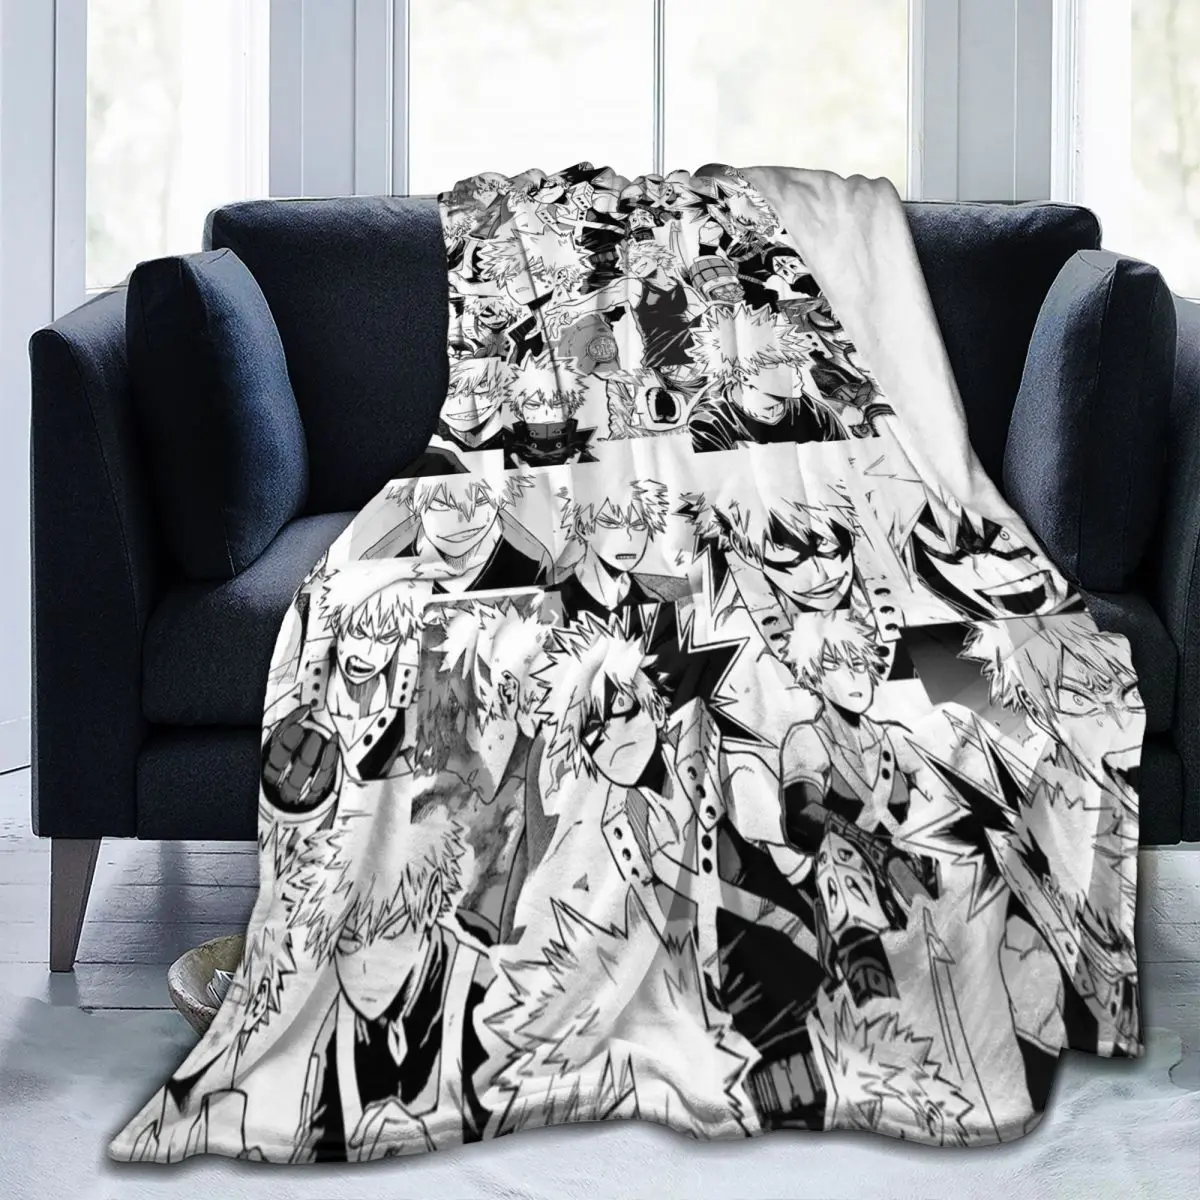 

Одеяло с рисунком Katsuki Bakugo, фланелевая обивка, мой герой, Академия, боку, нет героев, Академия, портативное одеяло